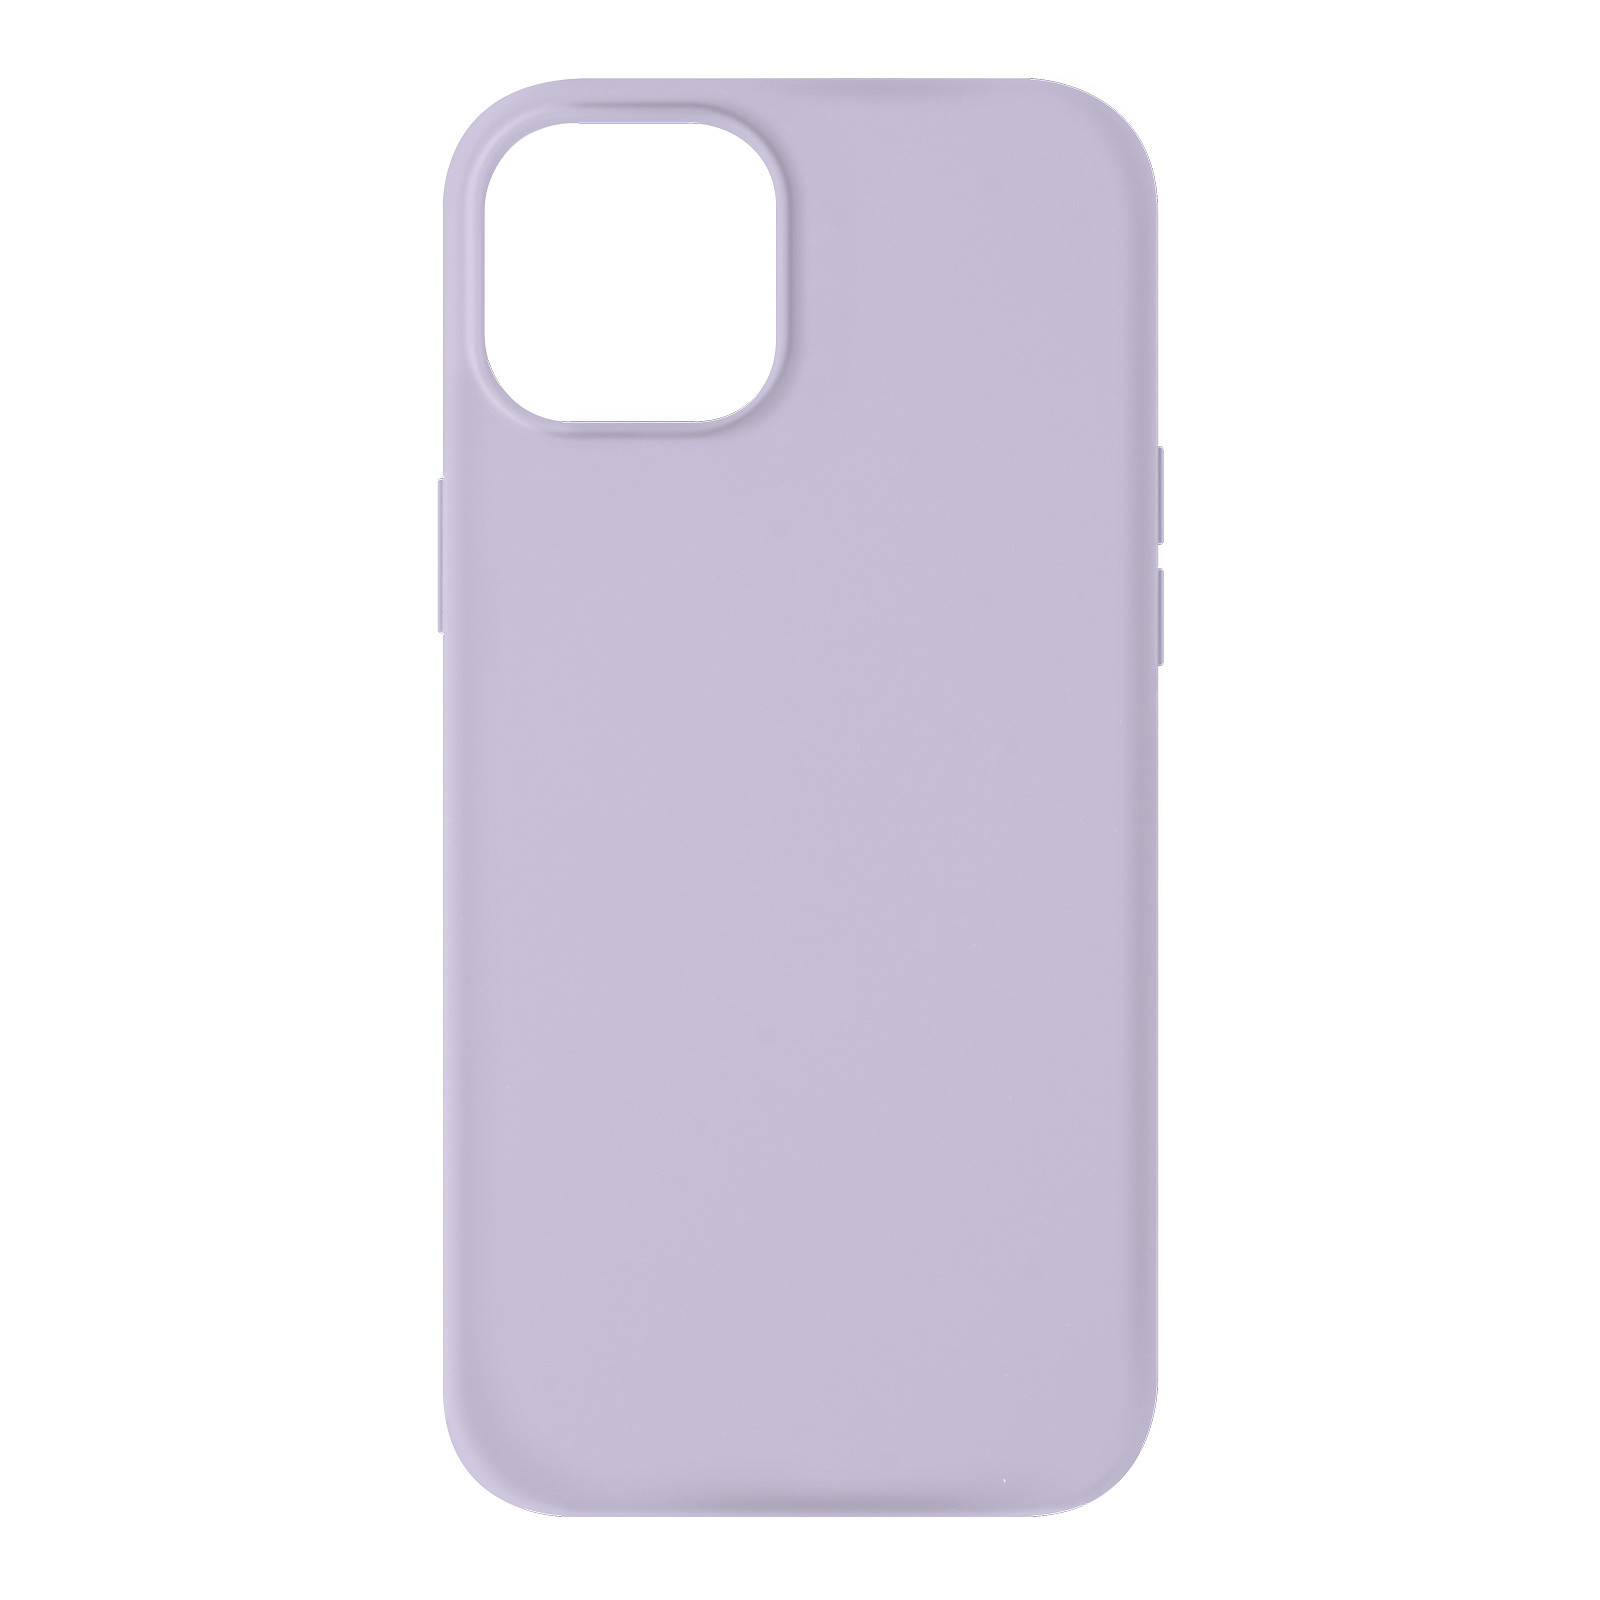 Avizar Coque pour iPhone 13 Mini Silicone Semi-rigide Finition Soft-touch violet - Coque telephone Avizar